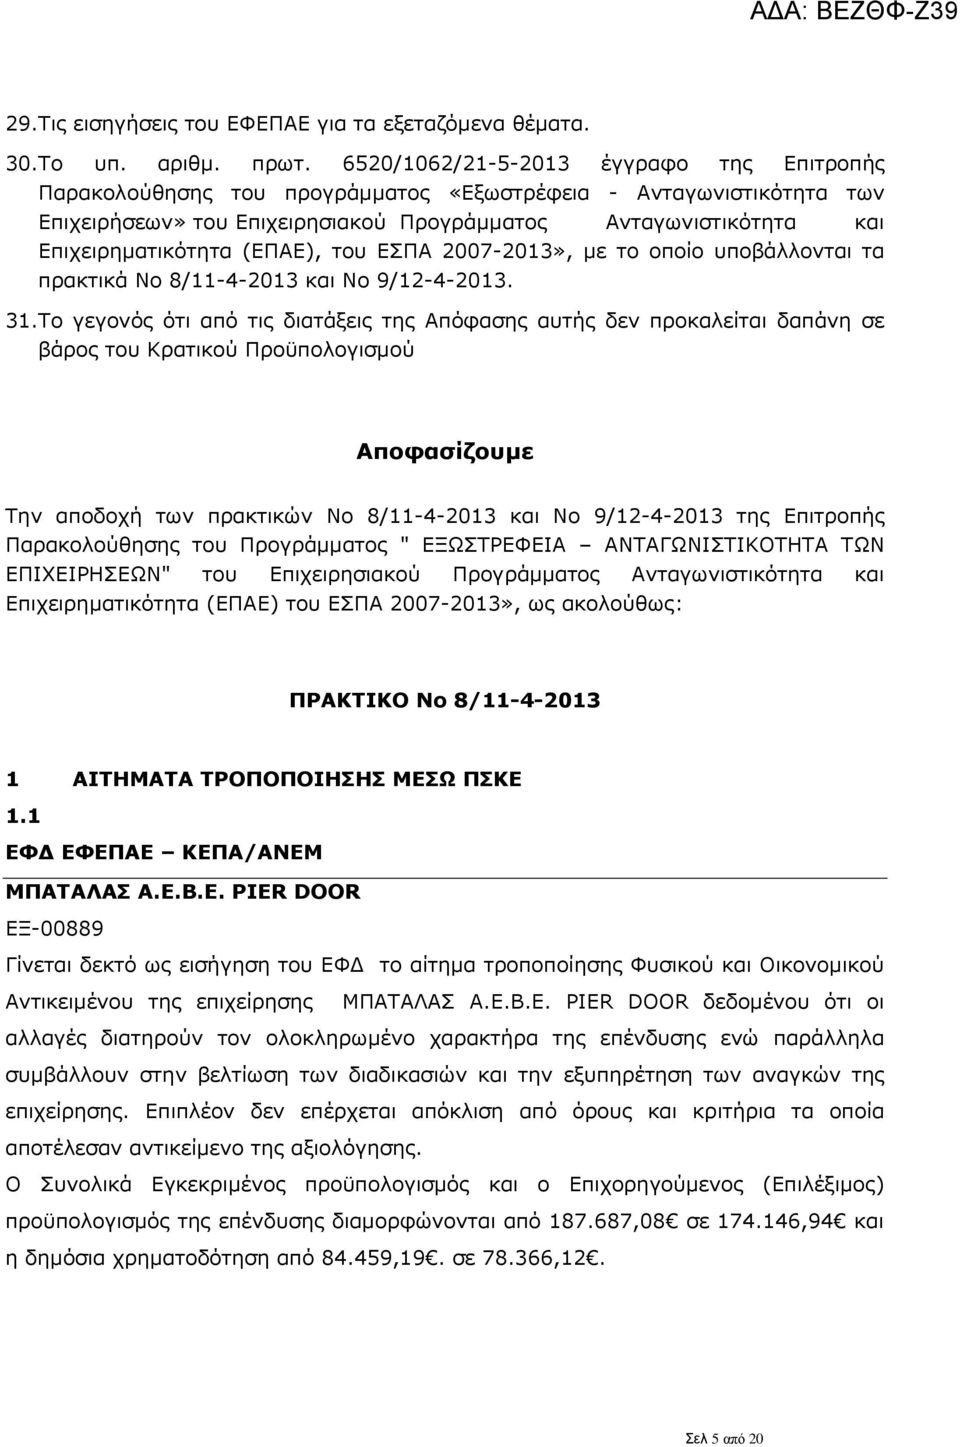 (ΕΠΑΕ), του ΕΣΠΑ 2007-2013», με το οποίο υποβάλλονται τα πρακτικά Νο 8/11-4-2013 και Νο 9/12-4-2013. 31.